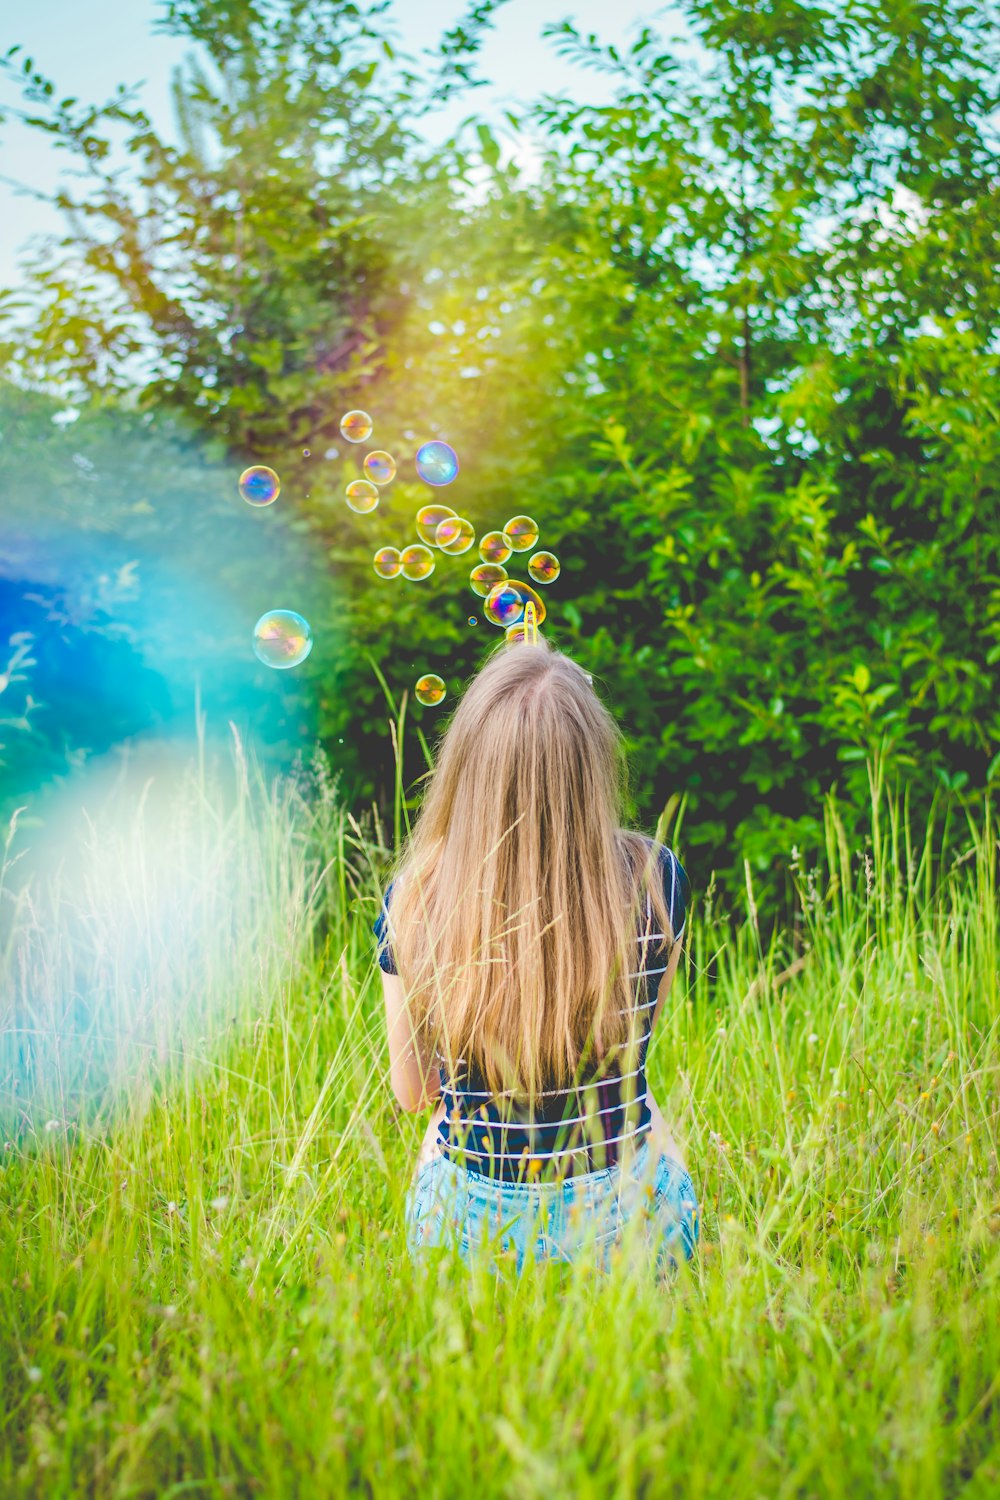 menina sentada enquanto joga bolhas no campo de grama verde perto de árvores de folhas verdes durante o dia